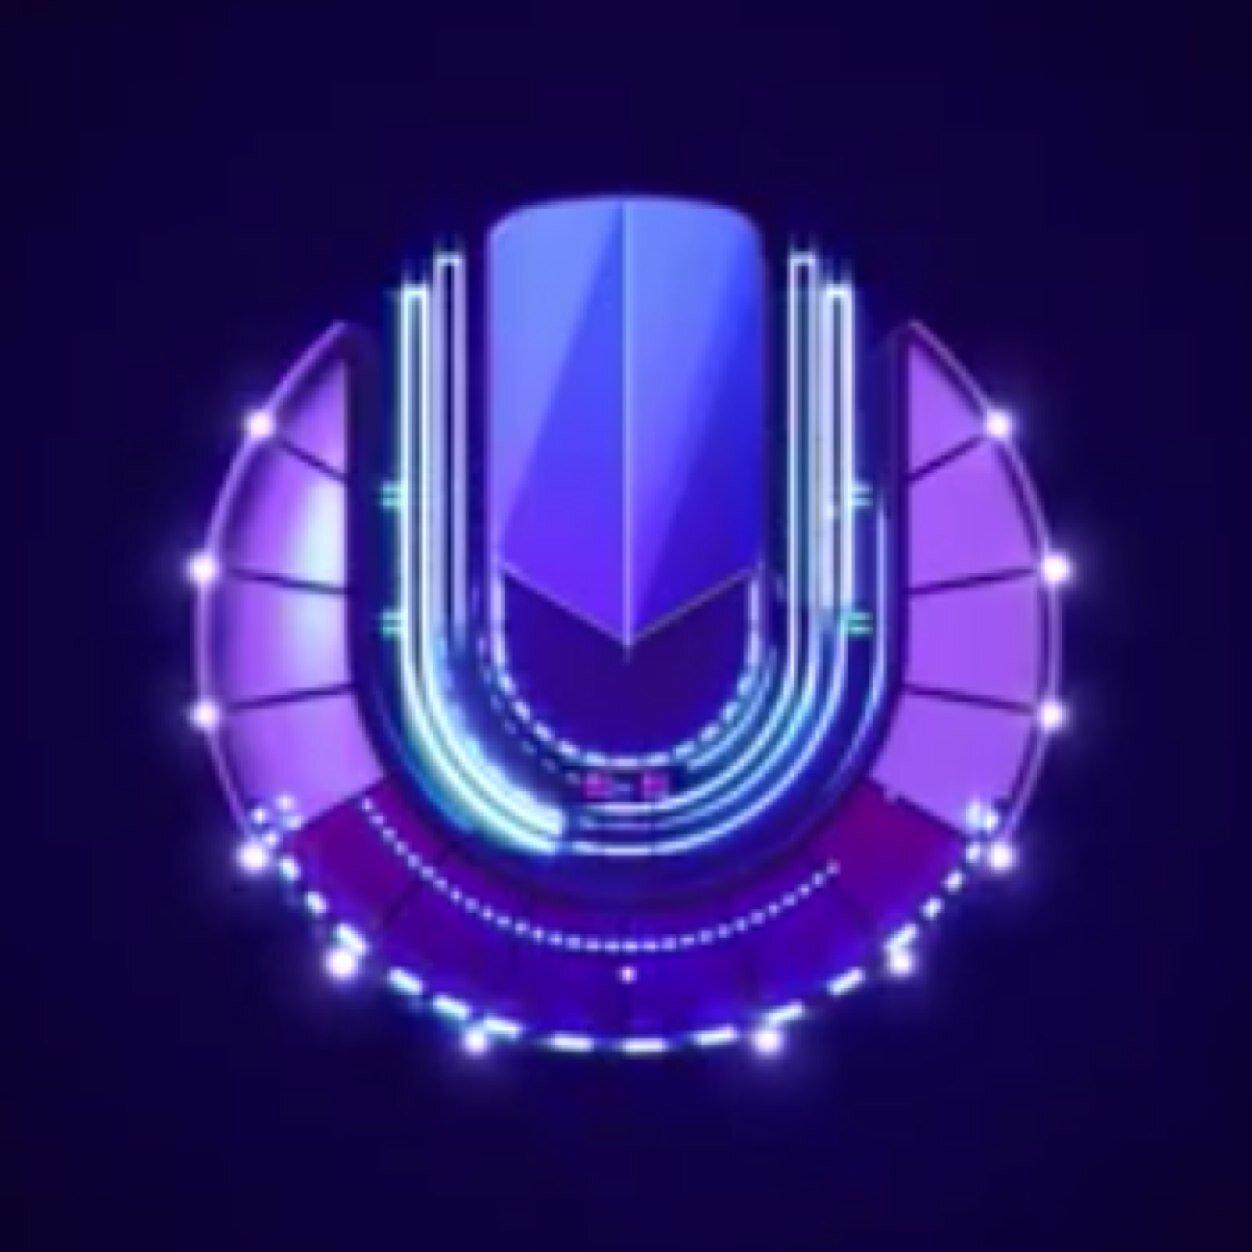 ultra music festival logo